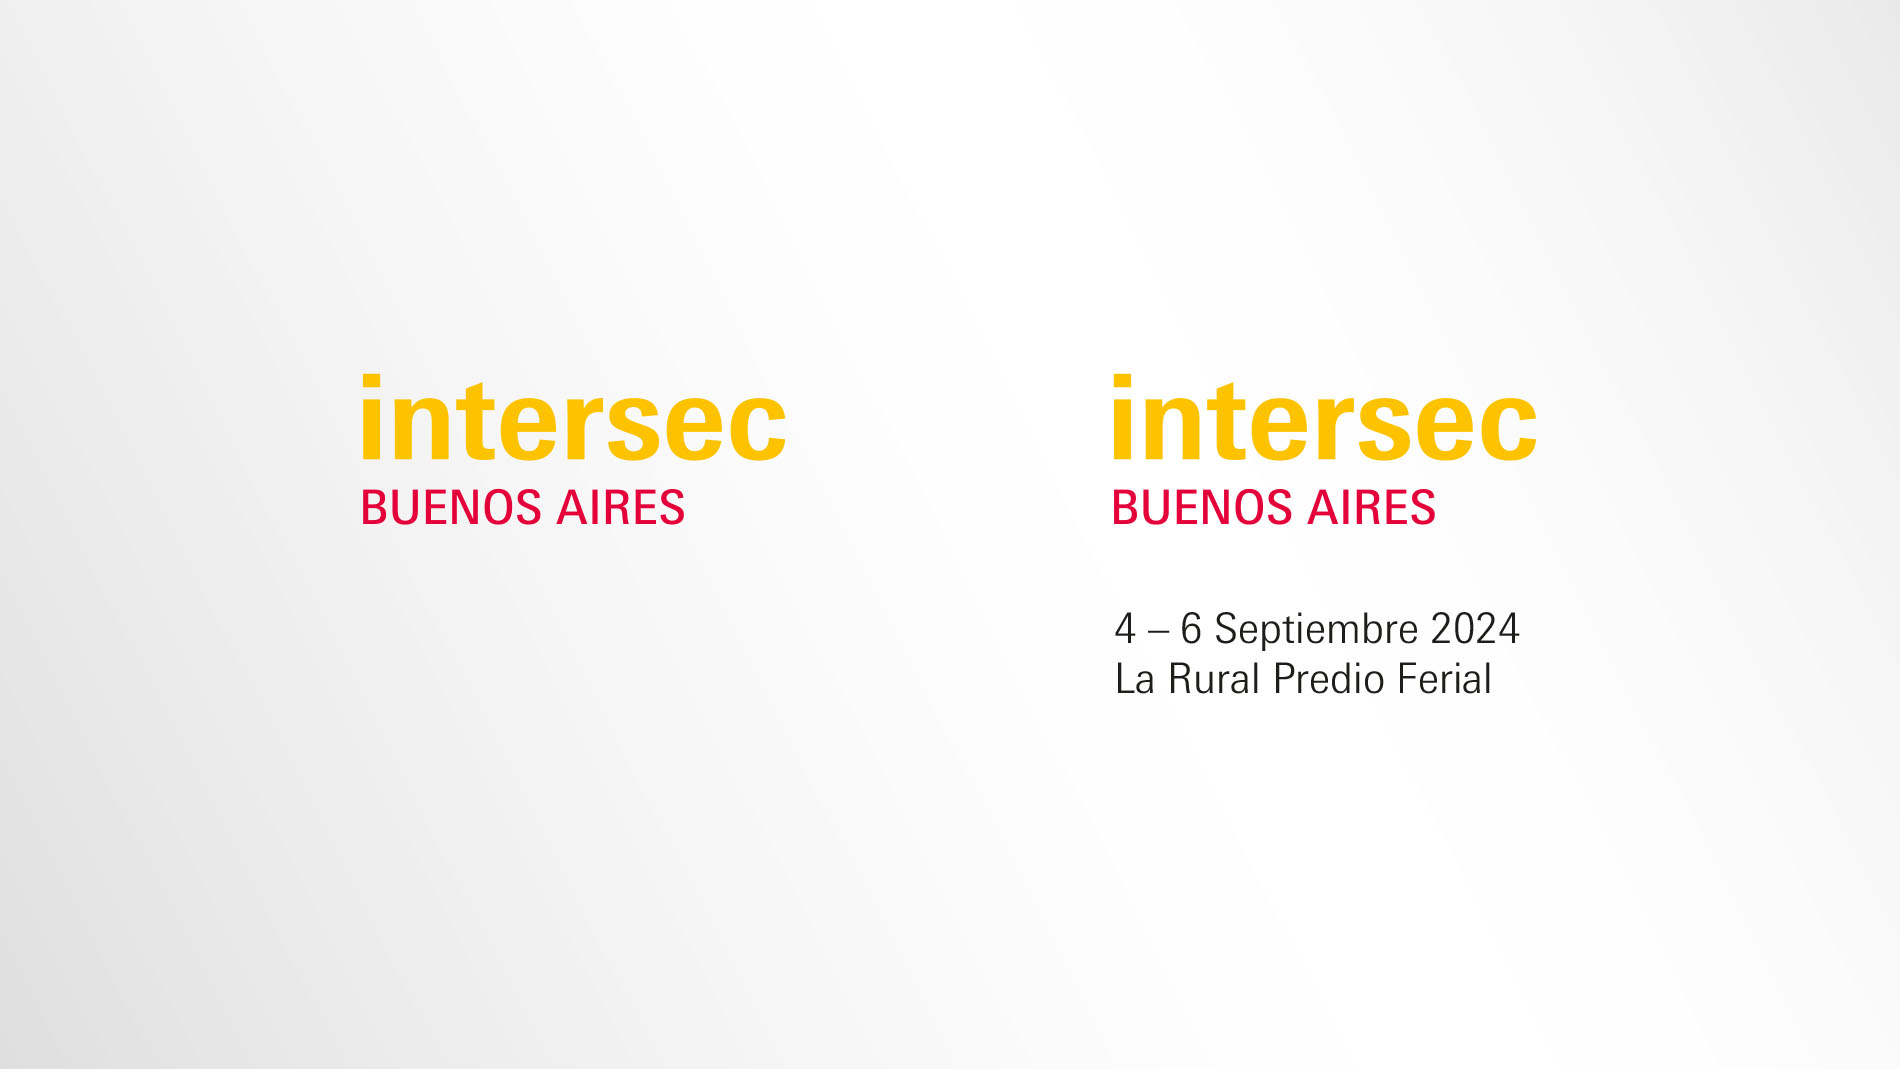 Intersec Buenos Aires: Logos